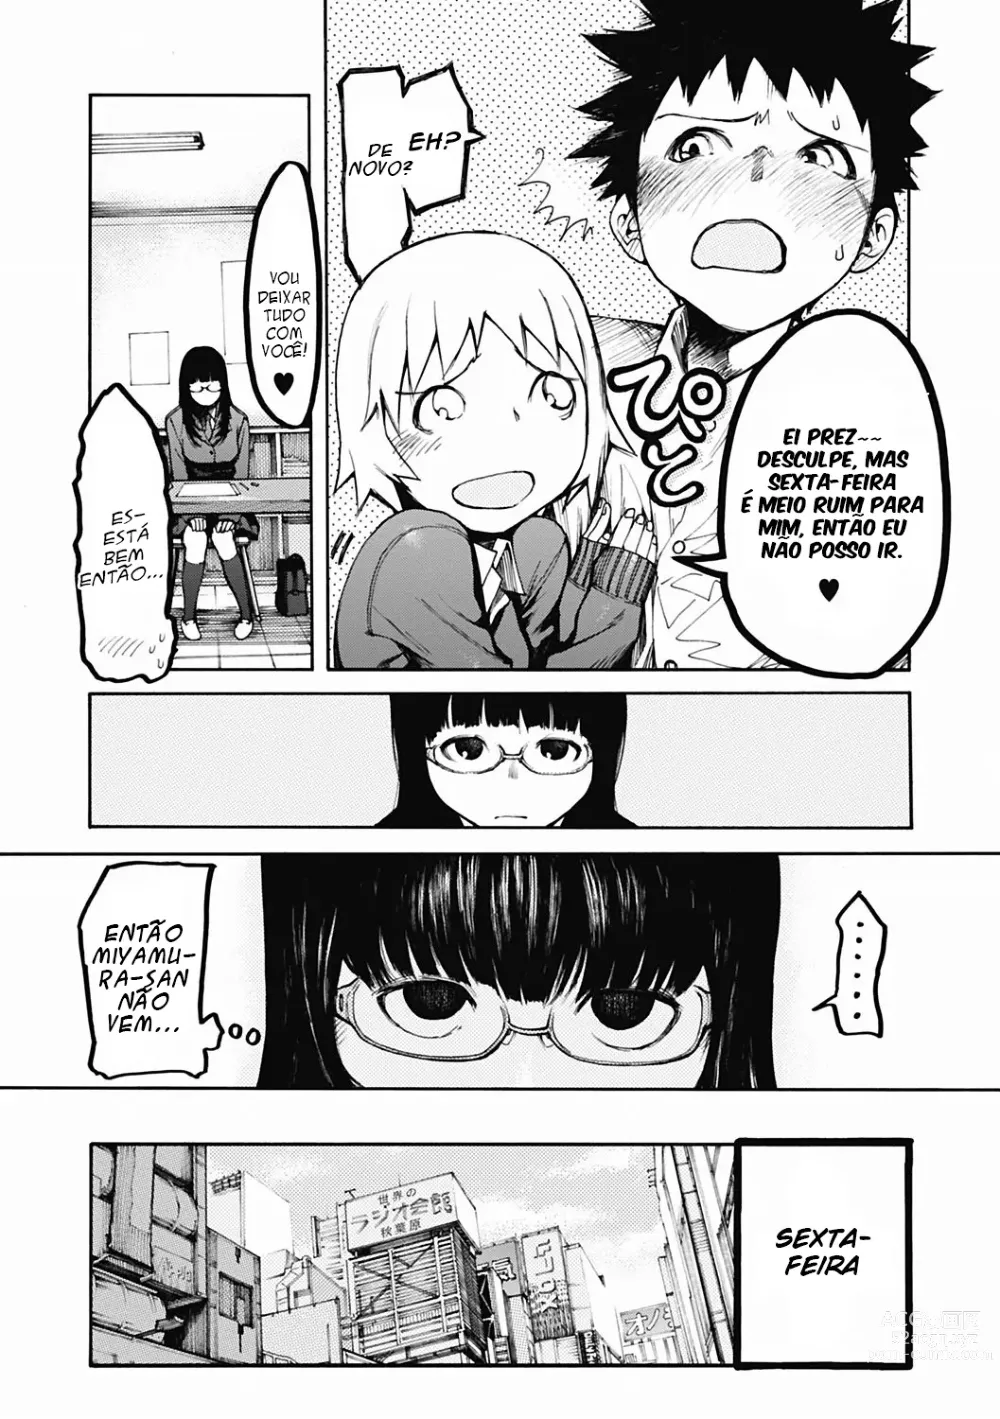 Page 4 of manga Ownership